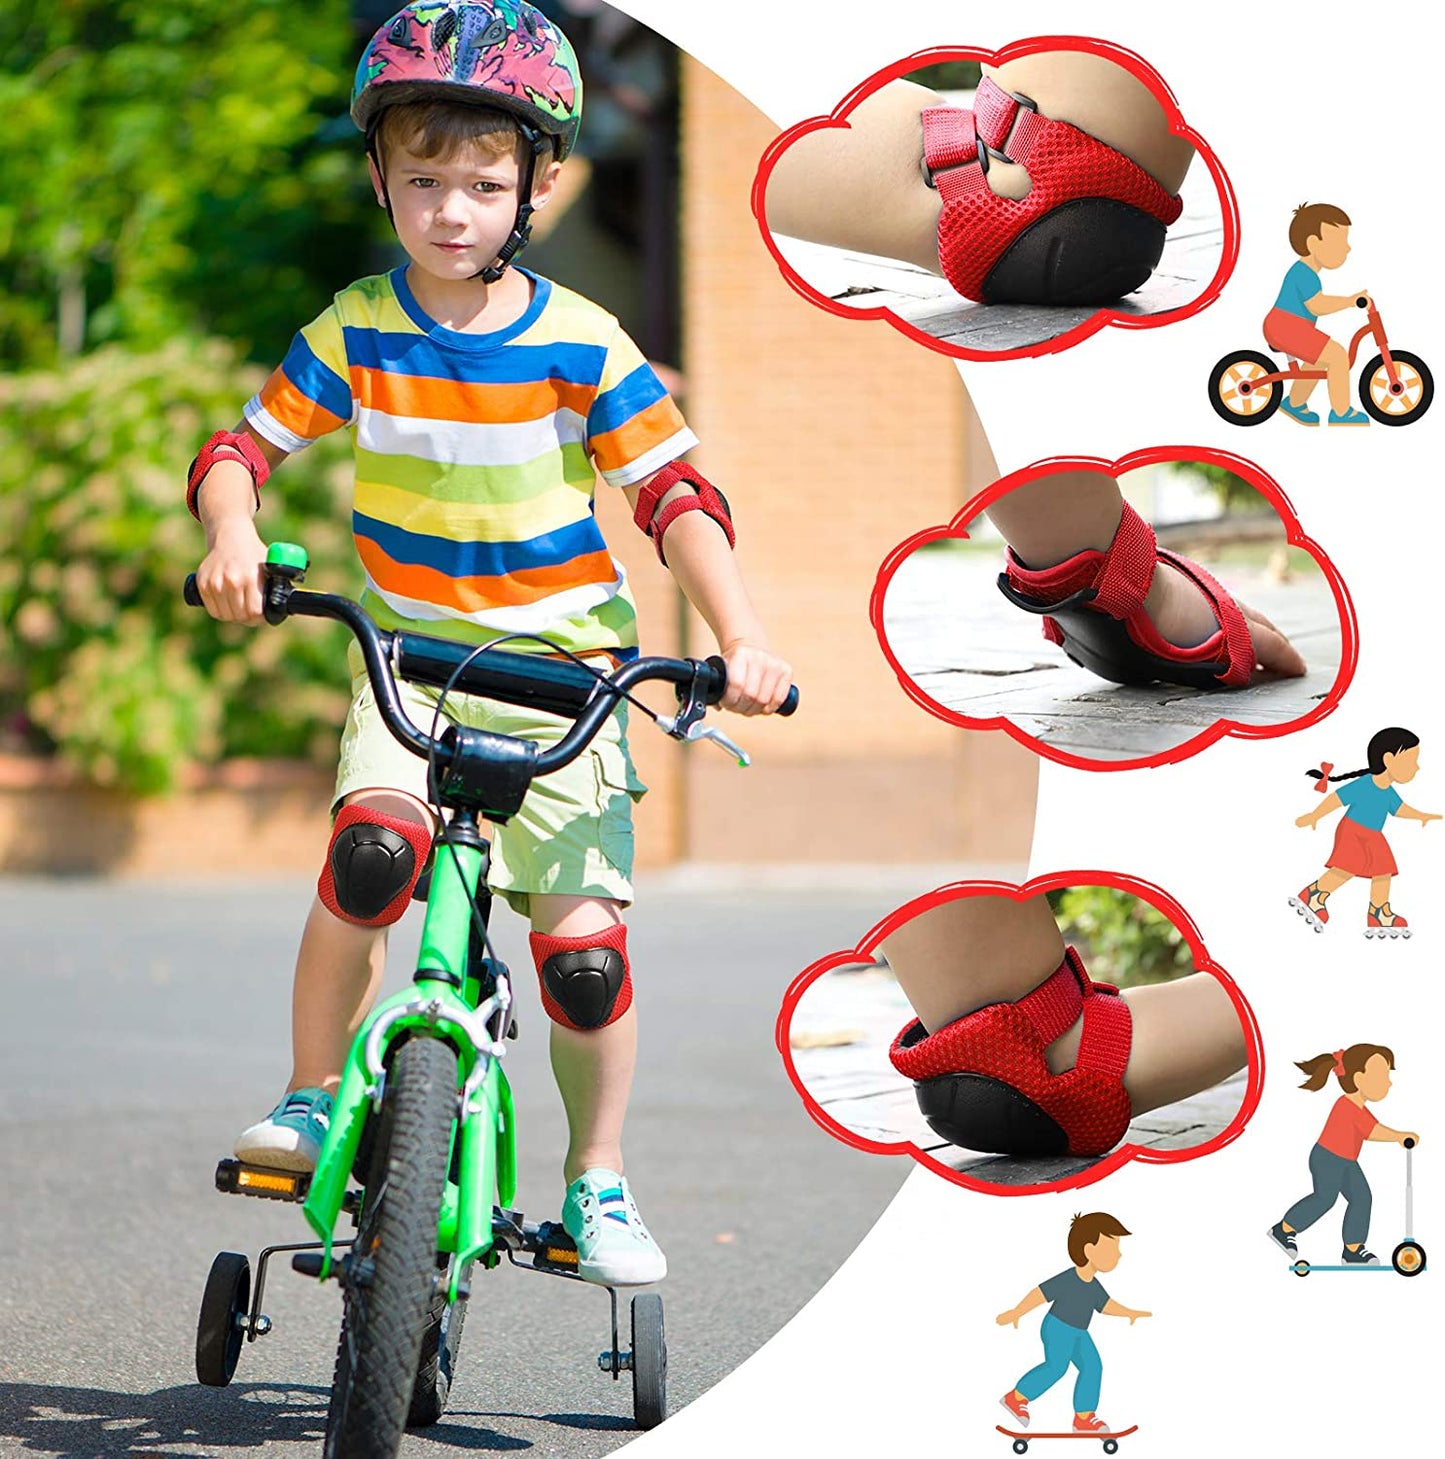 مجموعة حماية الركبة و الكوع و المعصم اثناء النشاطات الرياضية - لون وردي - مقاس صغير للاطفال